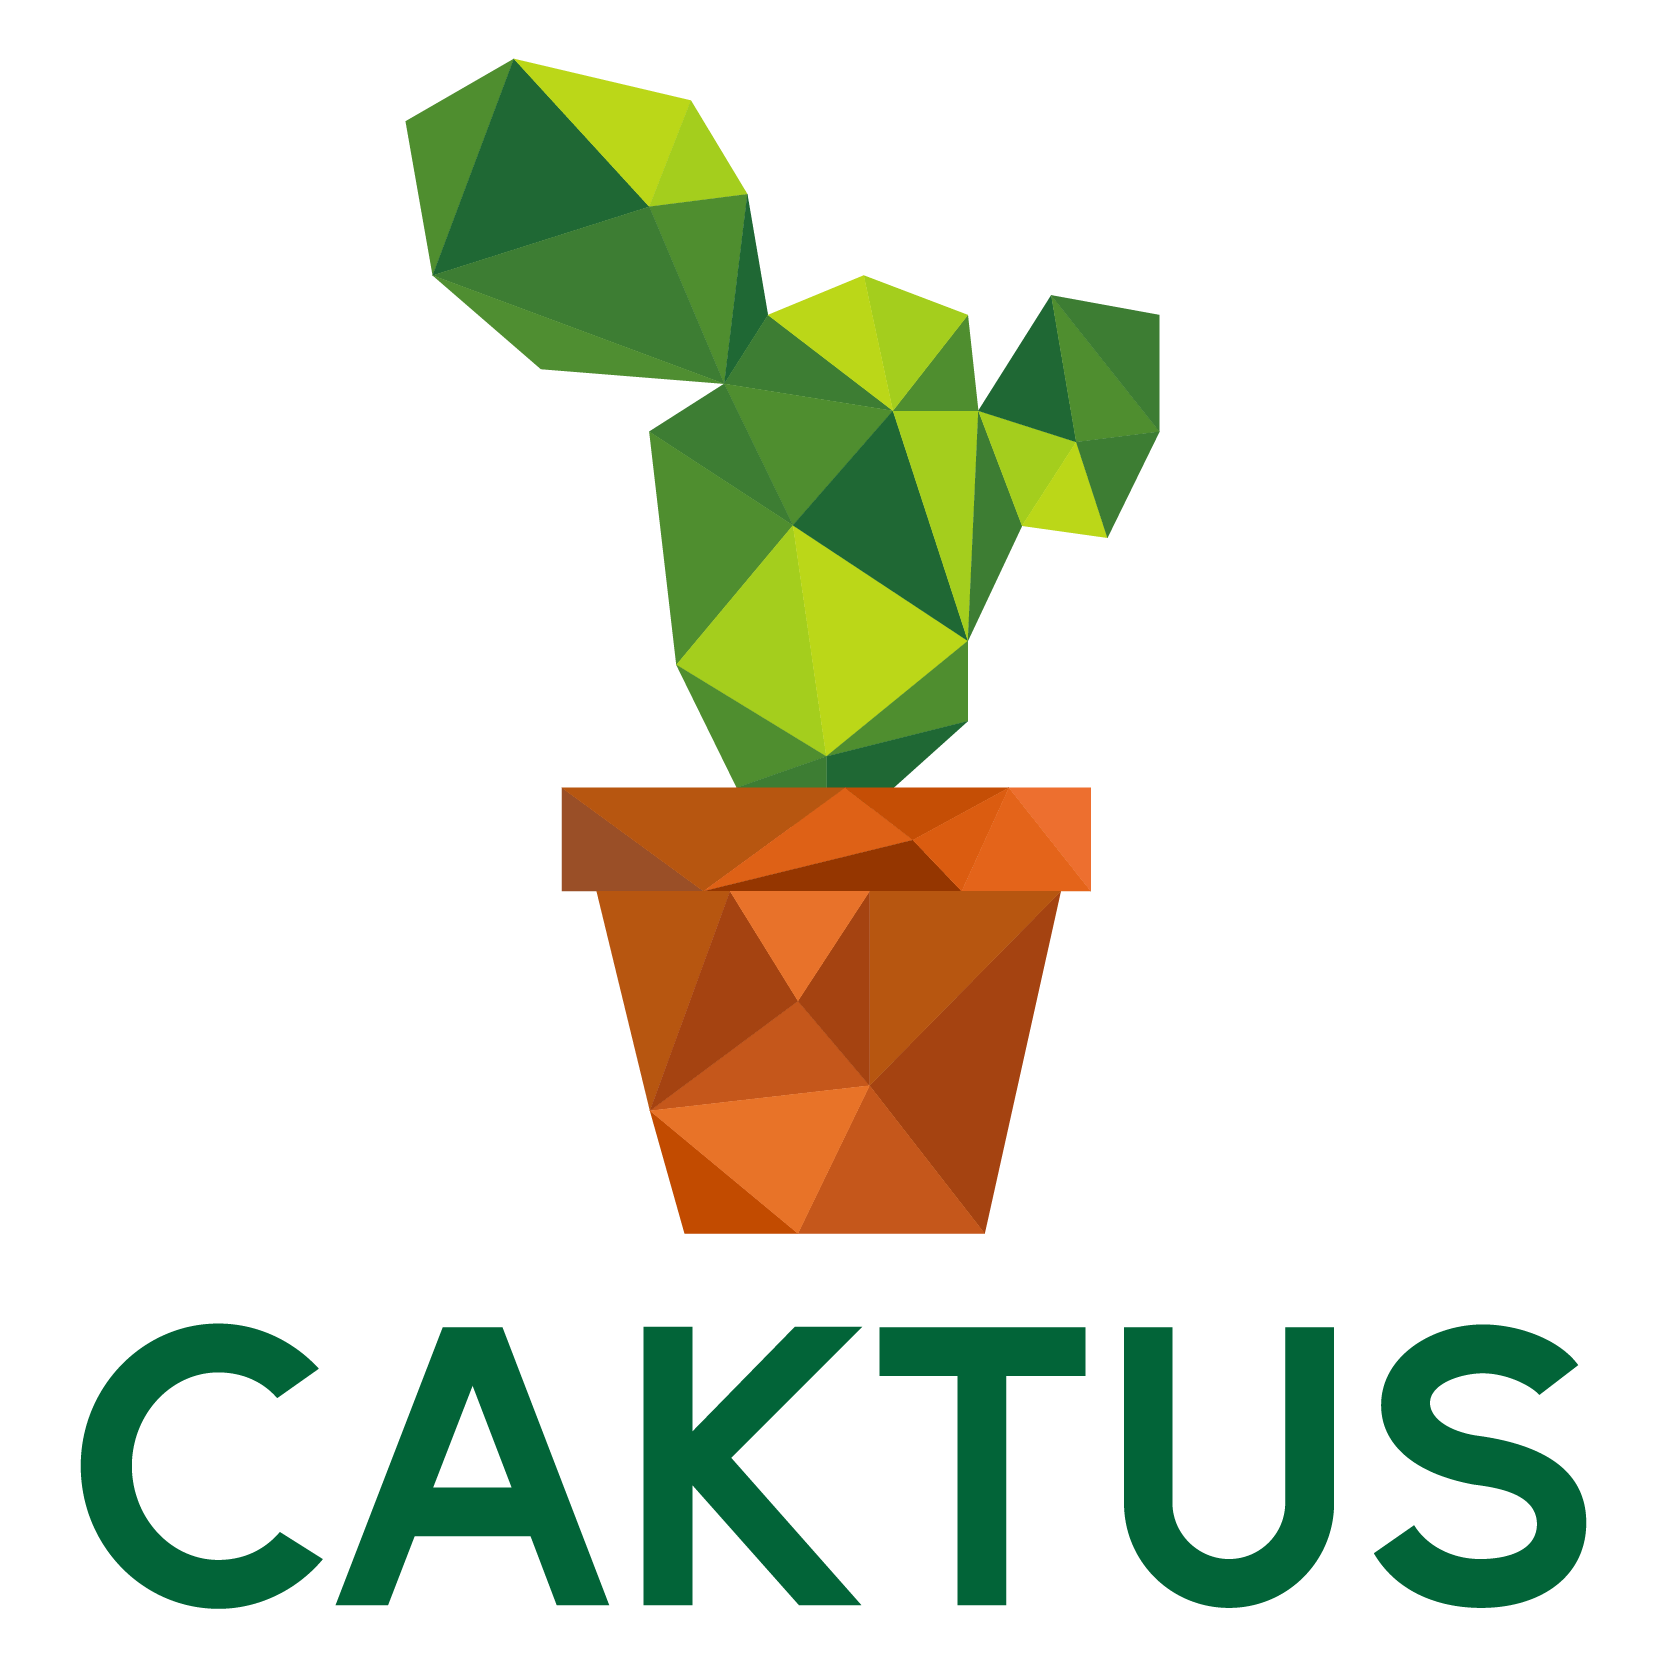 www.caktus.ai